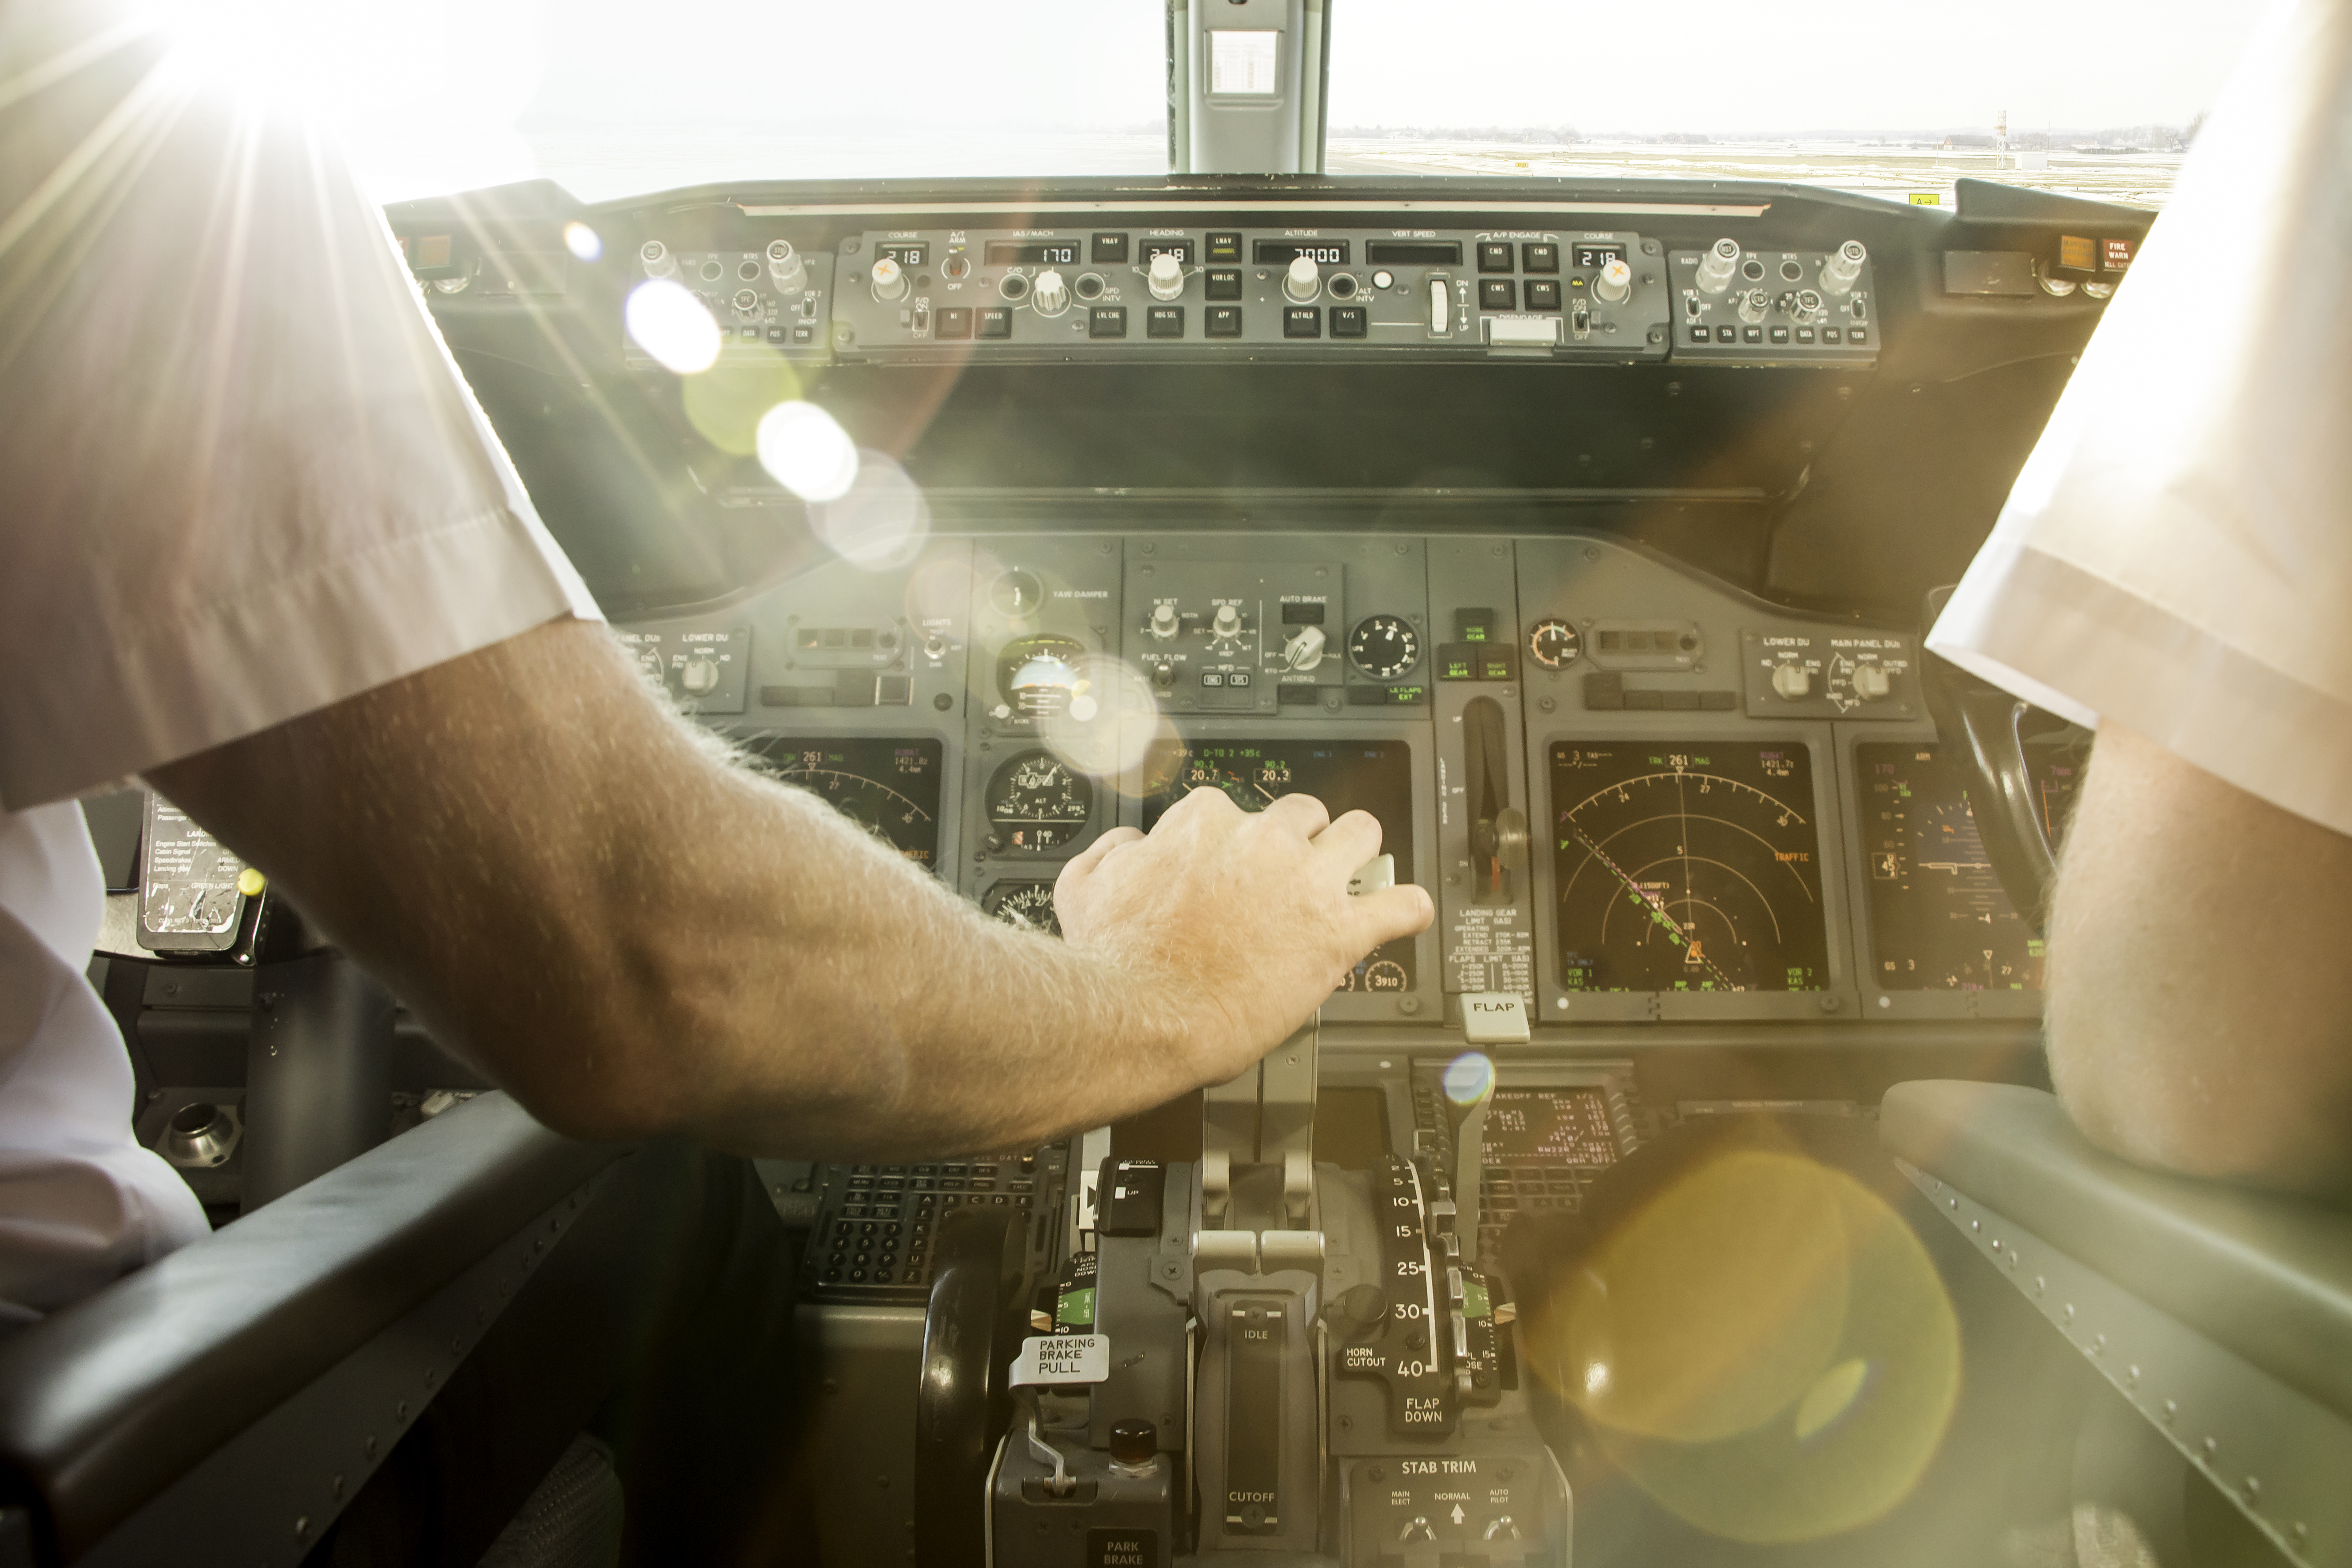 Twitter Melts Over Hot Pilot After Passenger “kind Of” Gets Plane To